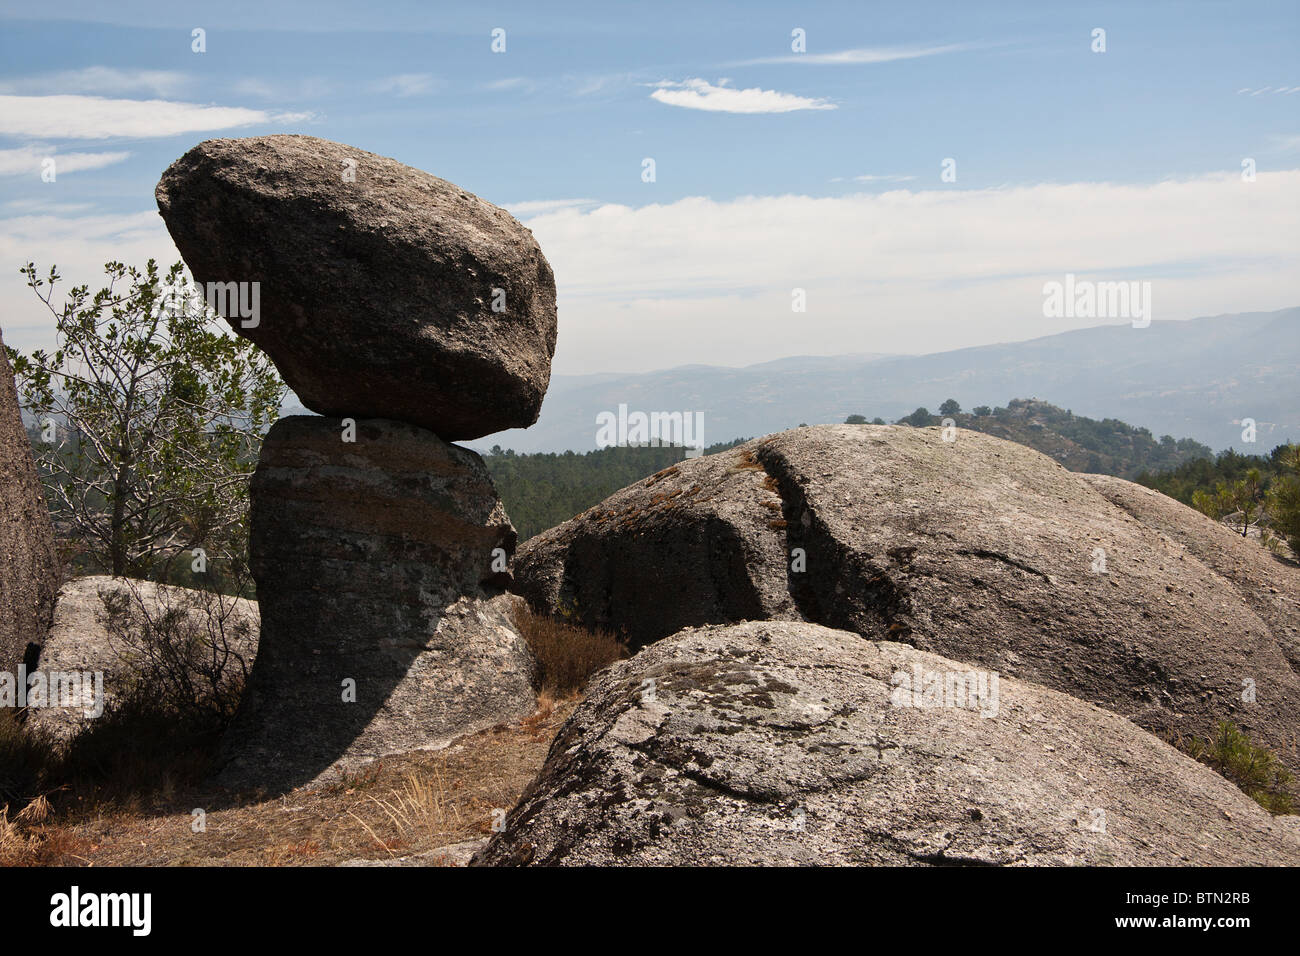 Rocher perdu au milieu de la Serra do Gerês au Portugal qui ressemble à un étranger. Banque D'Images